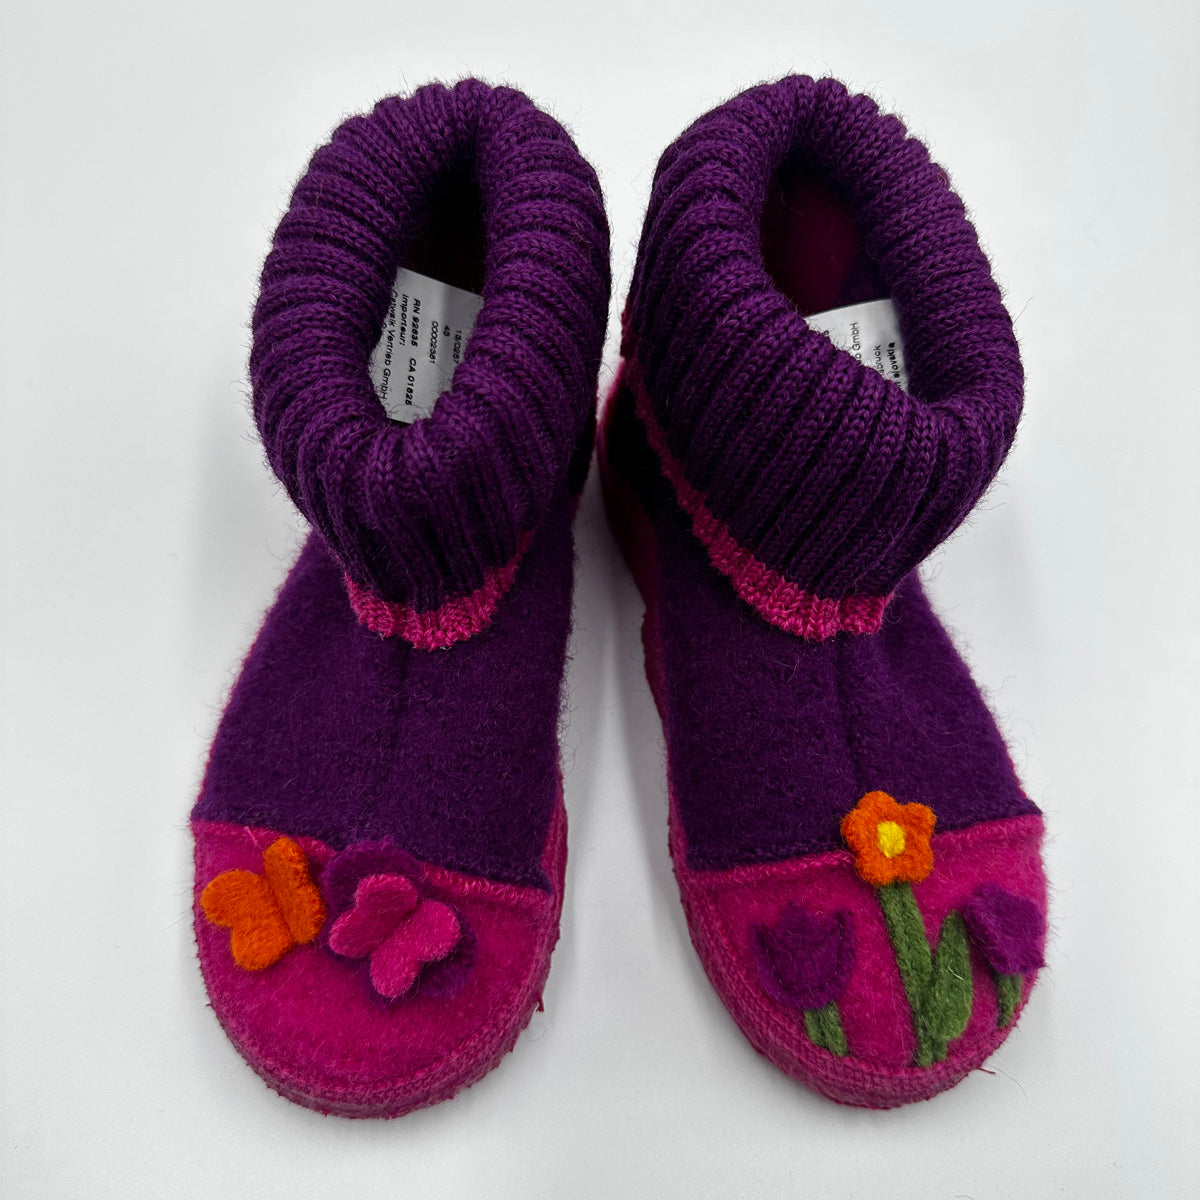 NANGA Boiled Wool Slippers for Children - Flower Pot